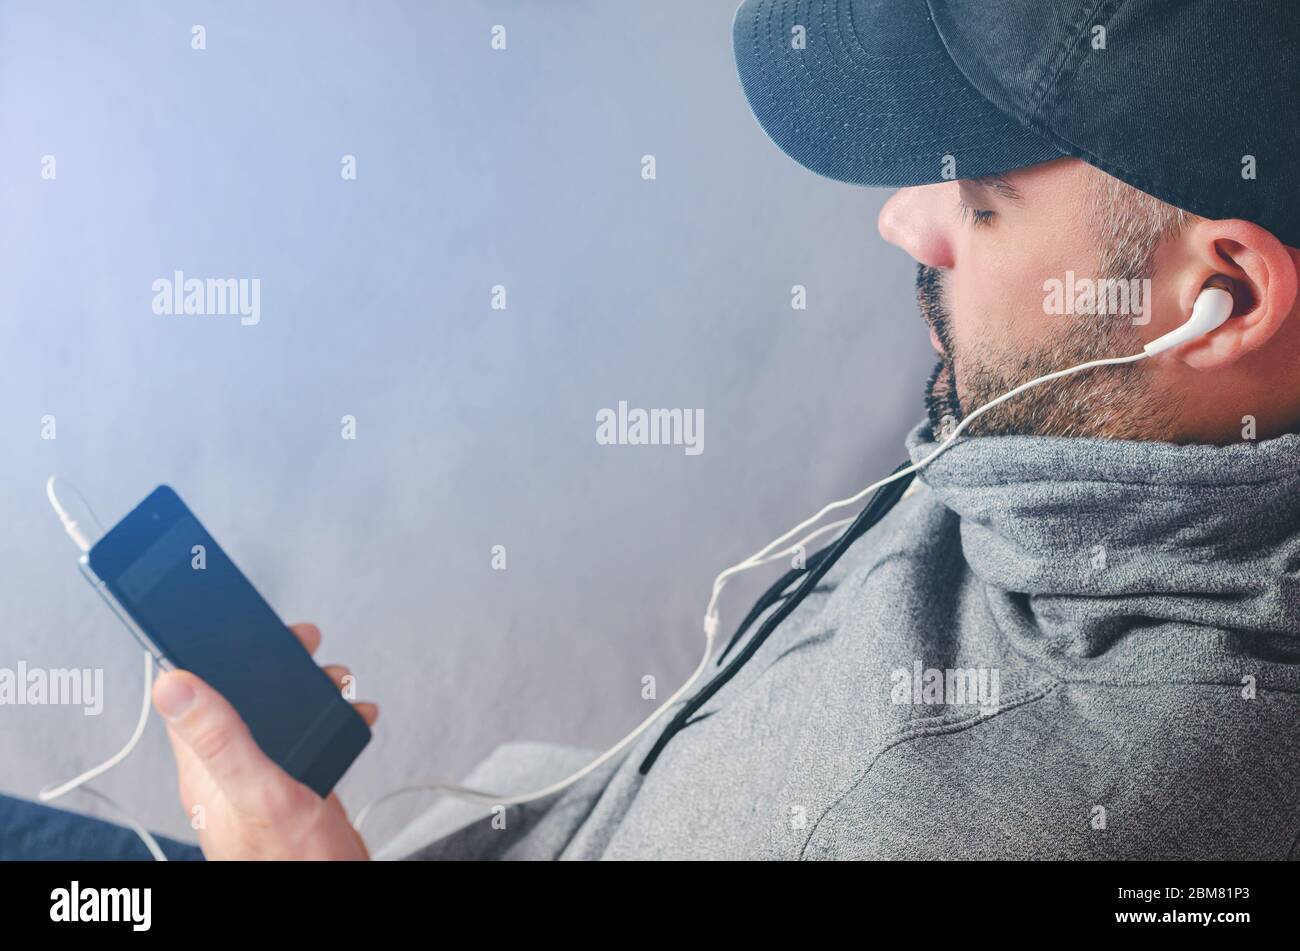 Retrato recortado de un hombre con barba en negro, viendo vídeos o escuchando música con los auriculares del smartphone. Espacio de copia Foto de stock